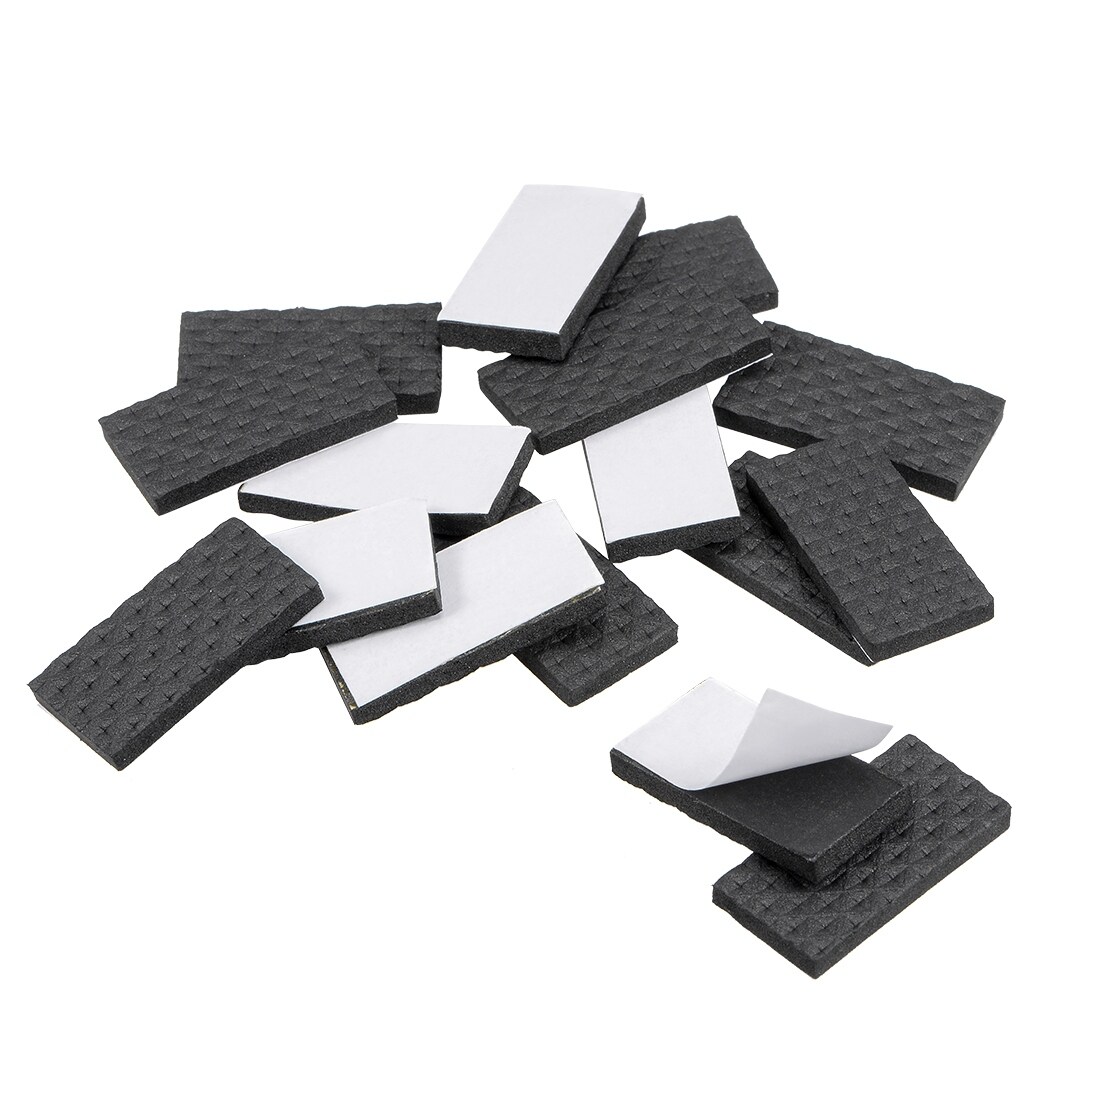 Unique Bargains Furniture Pads Adhesive Felt Pads 40mm x 40mm Square 3mm  Thick Black 28Pcs